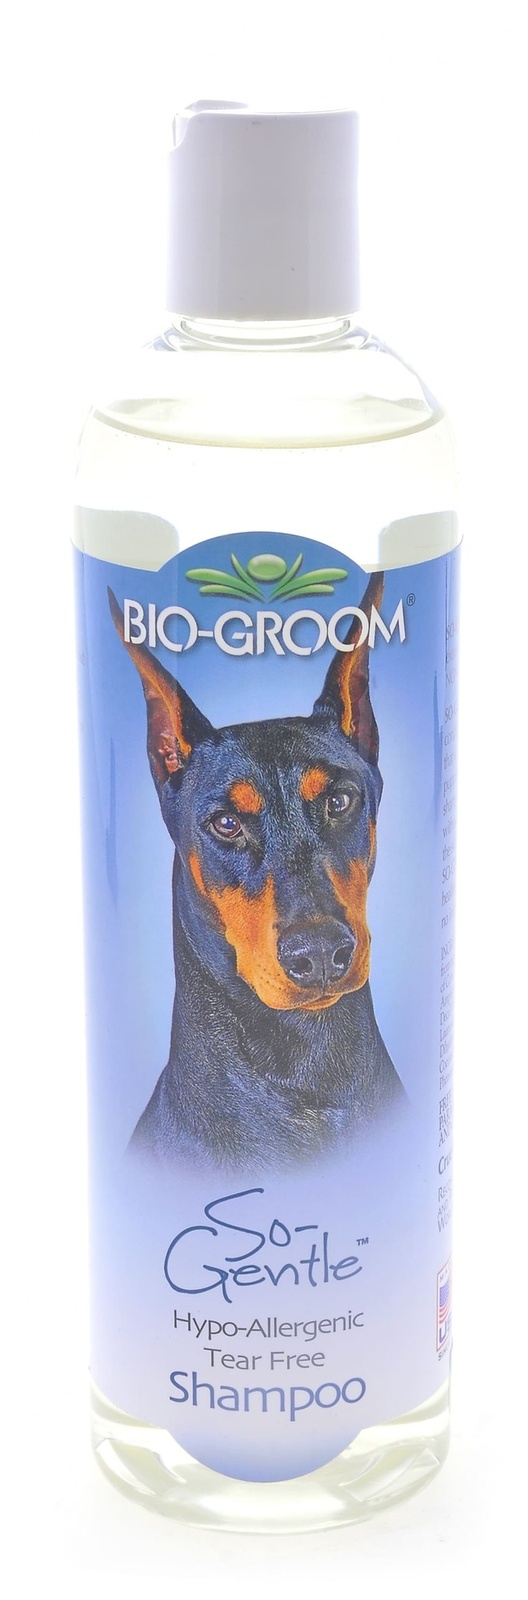 Biogroom Biogroom шампунь гипоаллергенный, концентрат 1:2, 1 литр готового шампуня (355 г) biogroom biogroom шампунь без смывания waterless bath 473 г